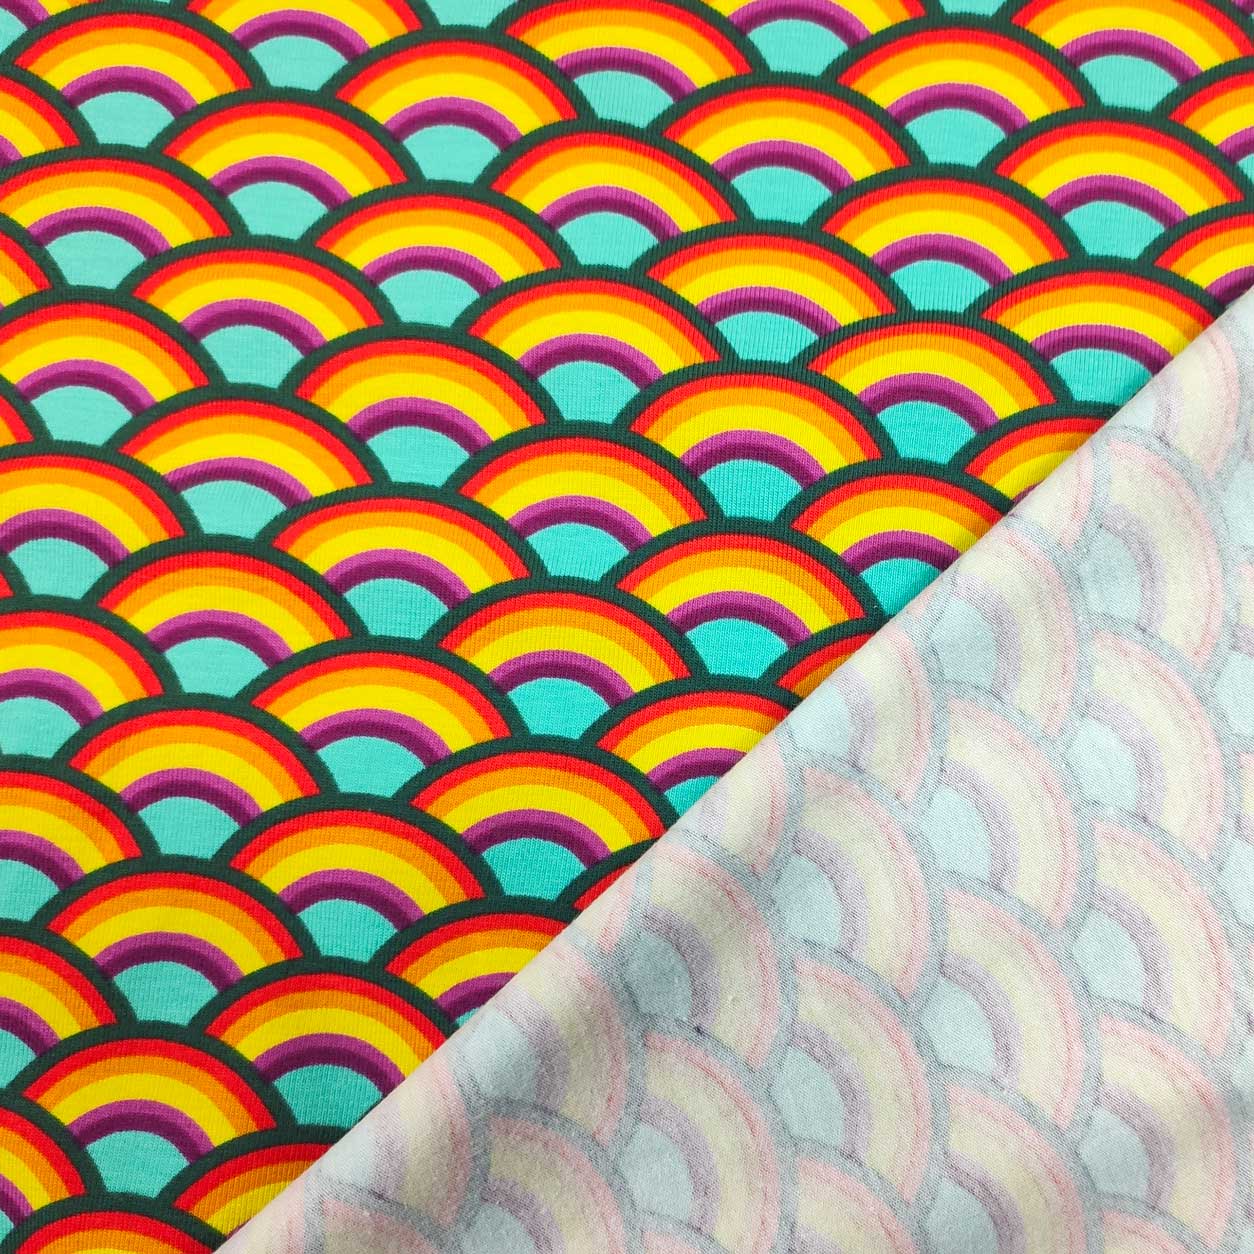 maglina di cotone arcobaleni sfondo turchese